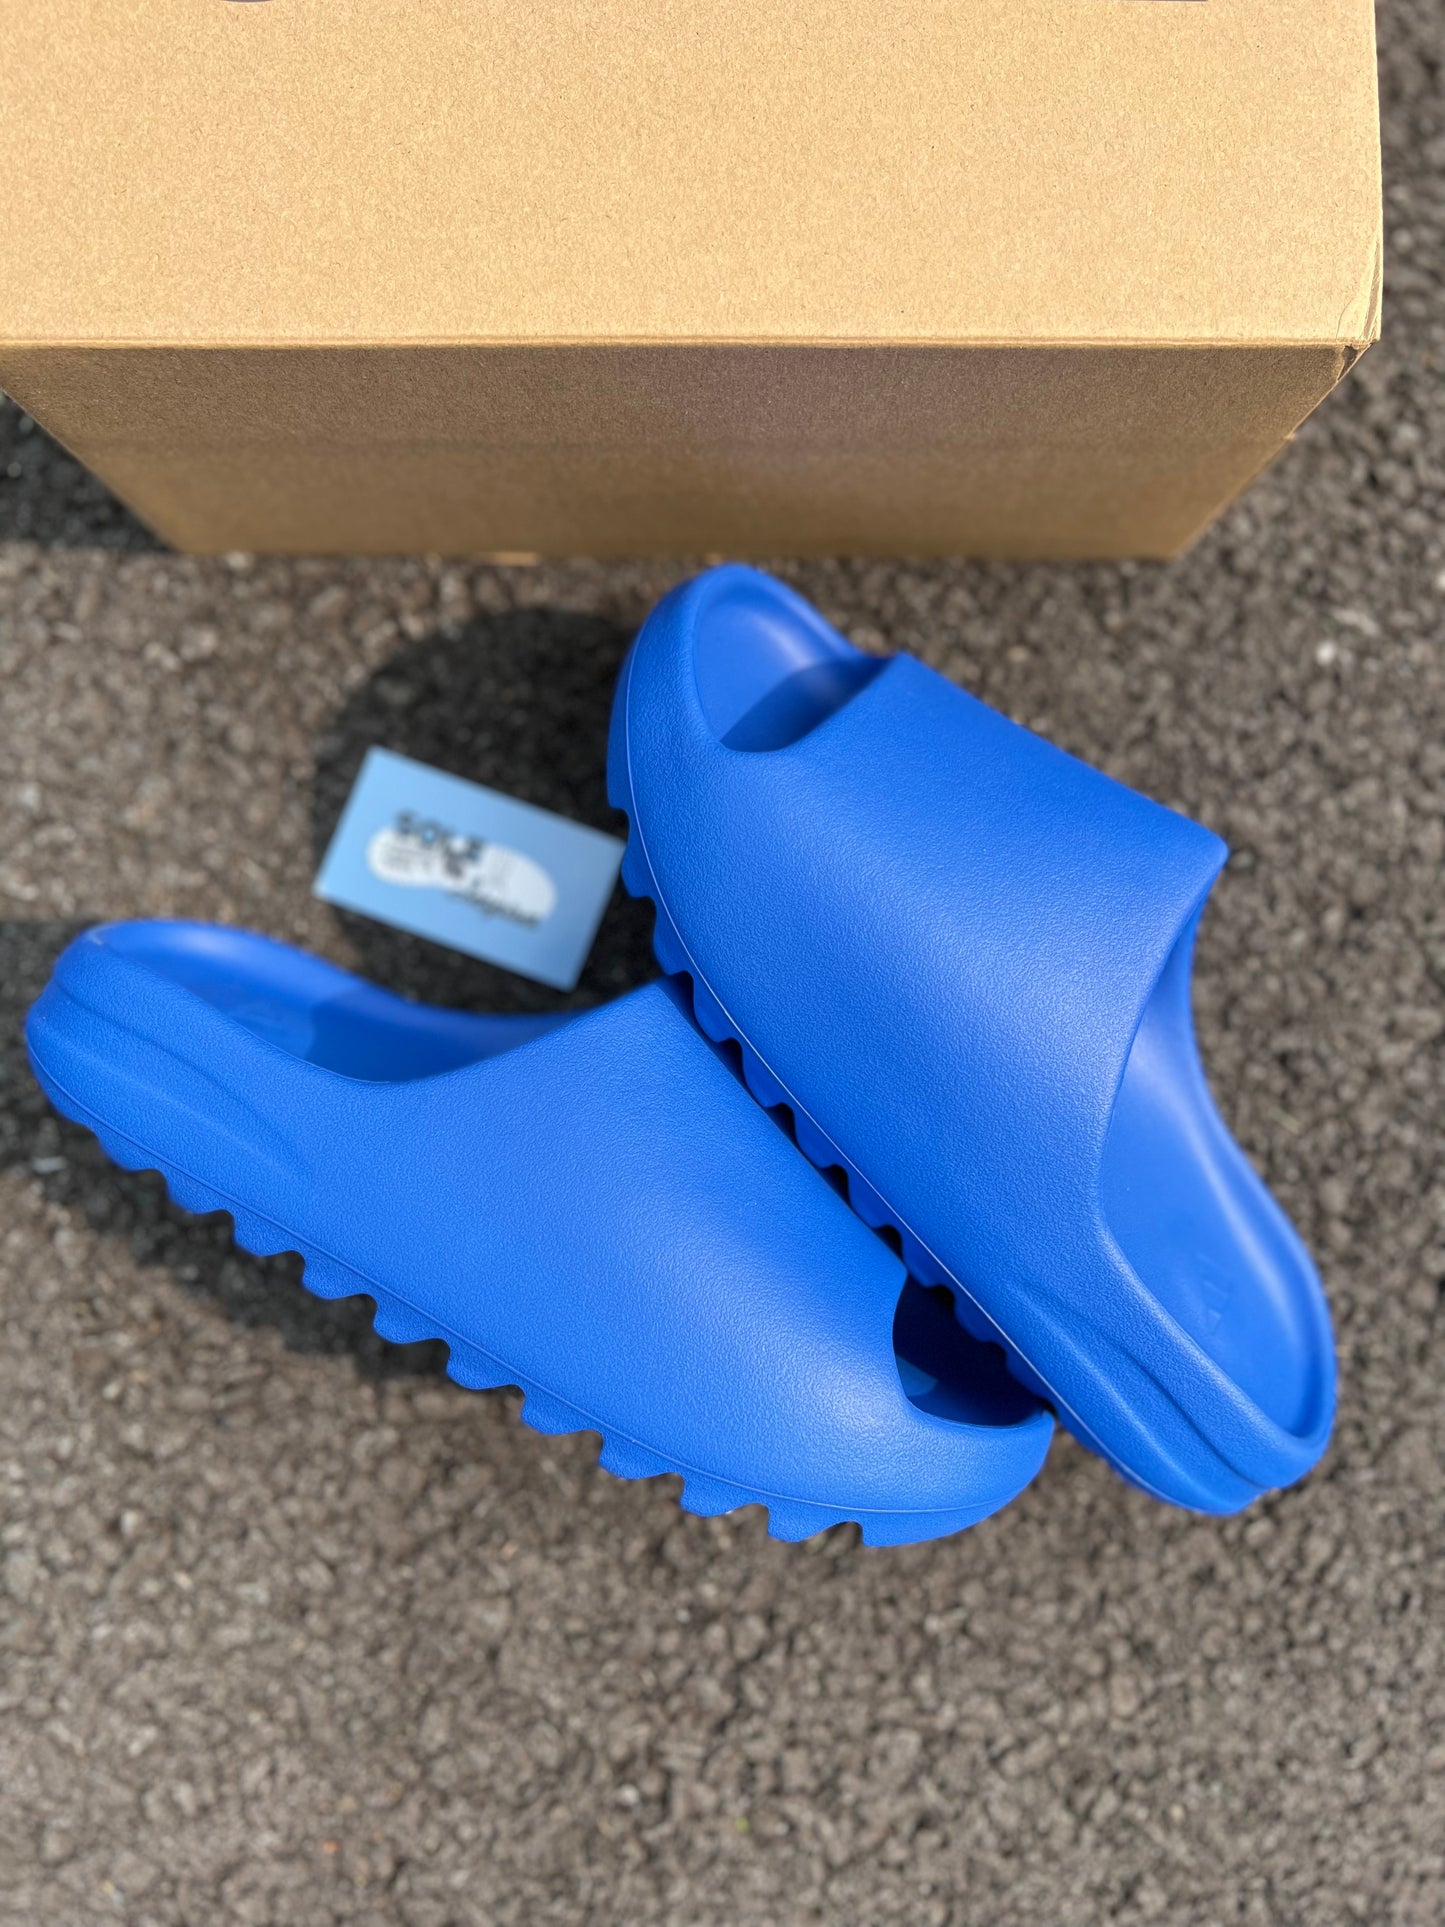 Adidas Yeezy Slide “Azure”